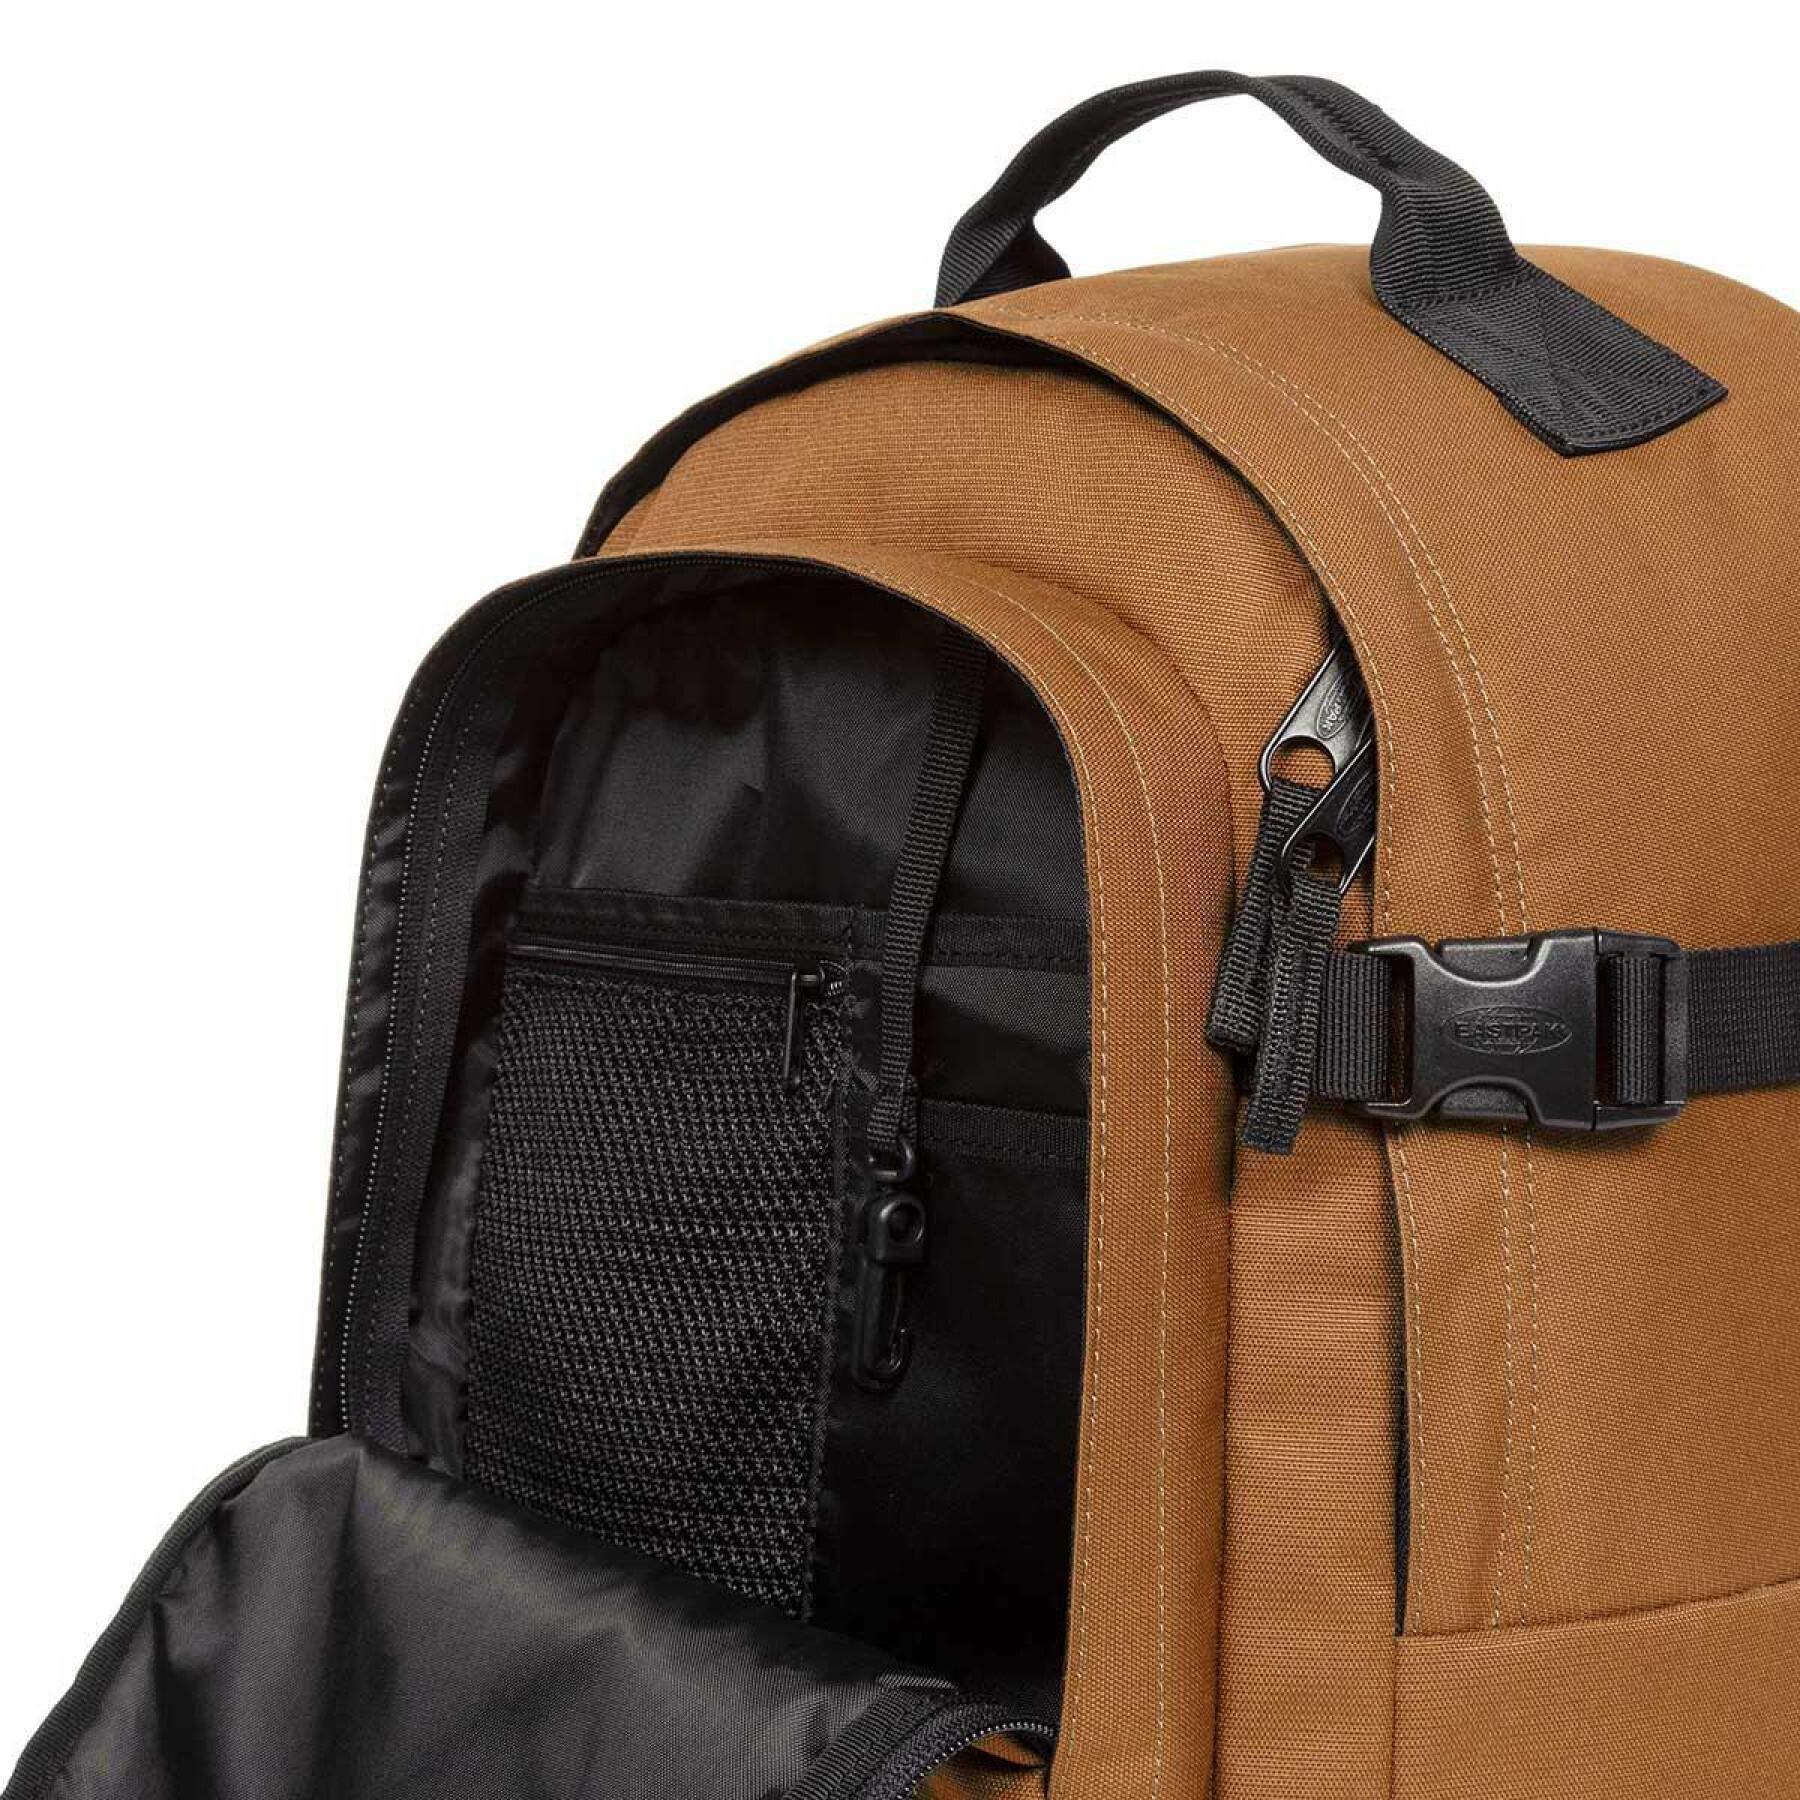 Backpack Eastpak Smallker